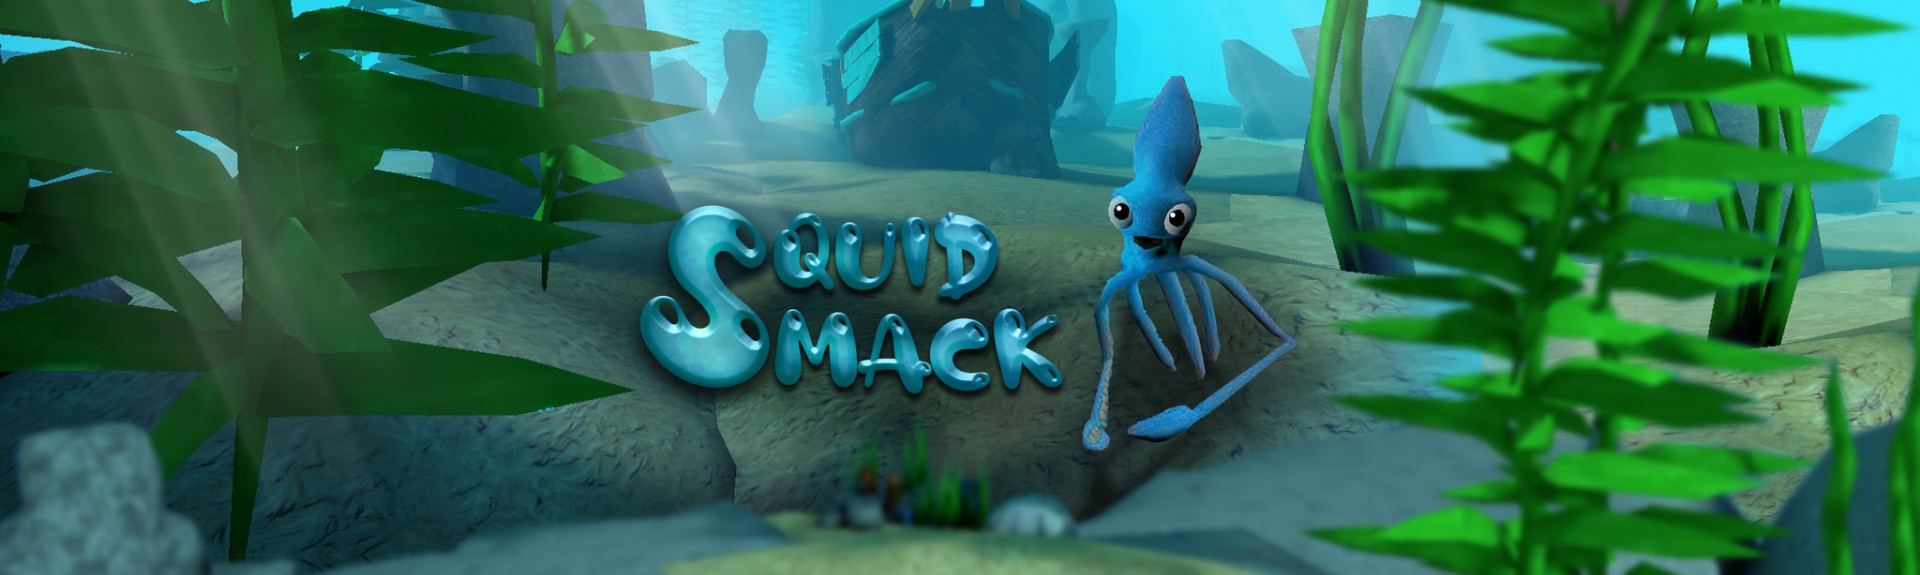 Squid Smack